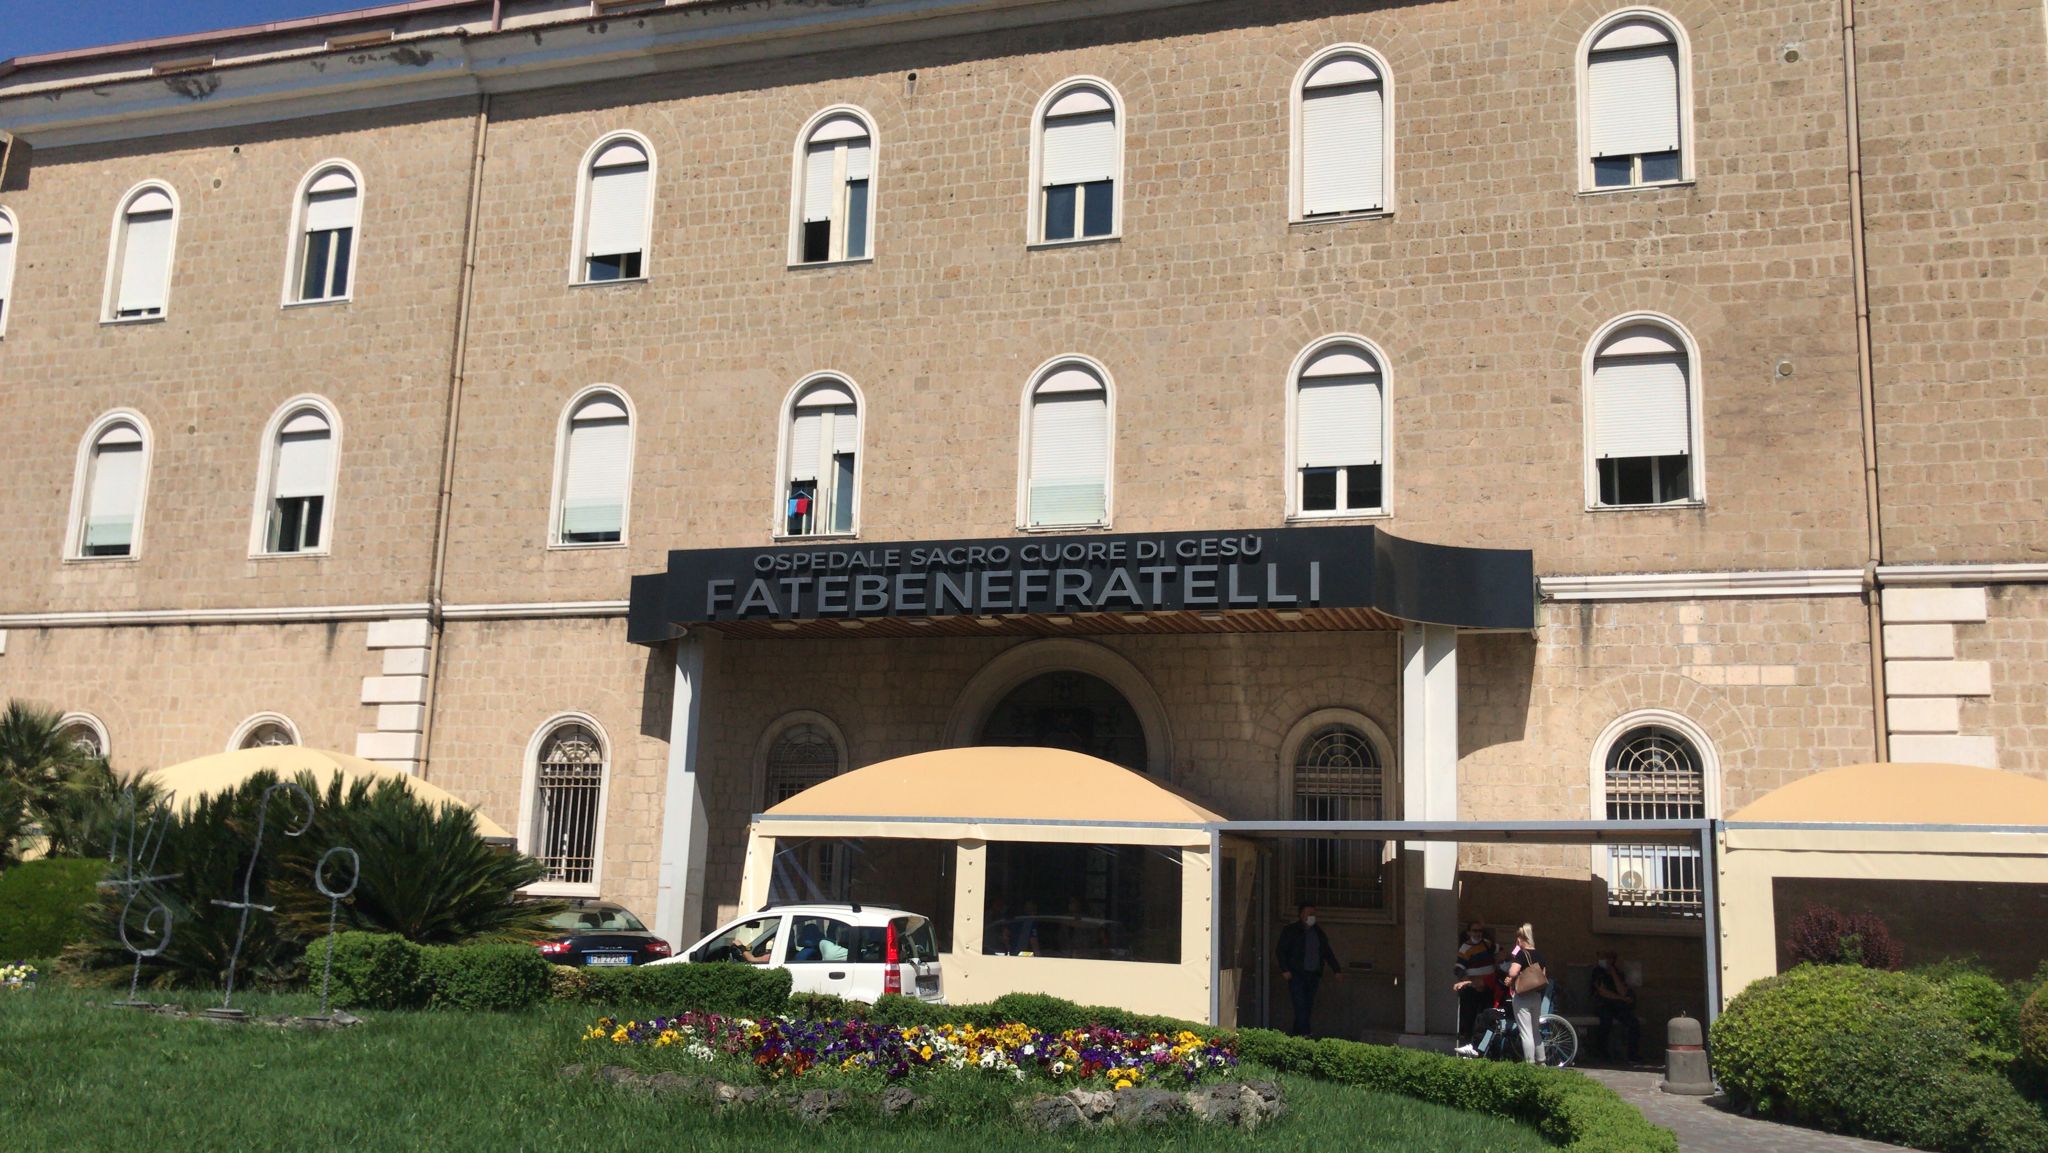 Fatebenefratelli: due morti dopo intervento di bypass gastrico, aperto un fascicolo